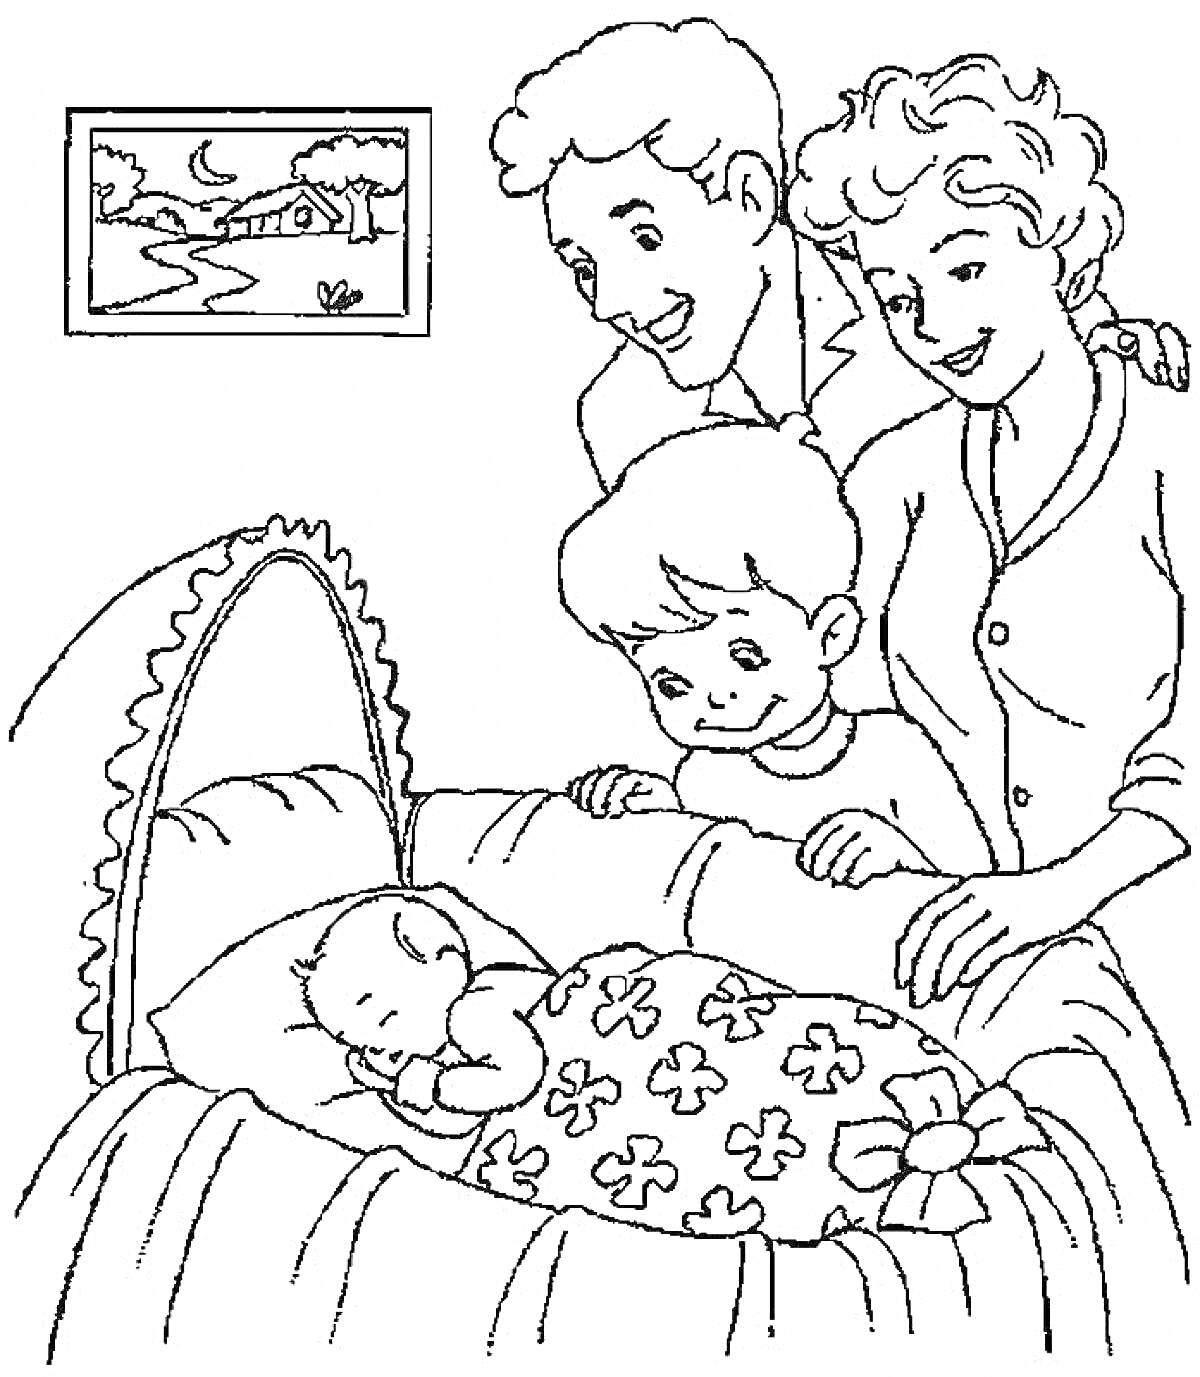 Семья возле кроватки с младенцем, мама, папа, старший брат и маленький ребенок, картина на стене с пейзажем